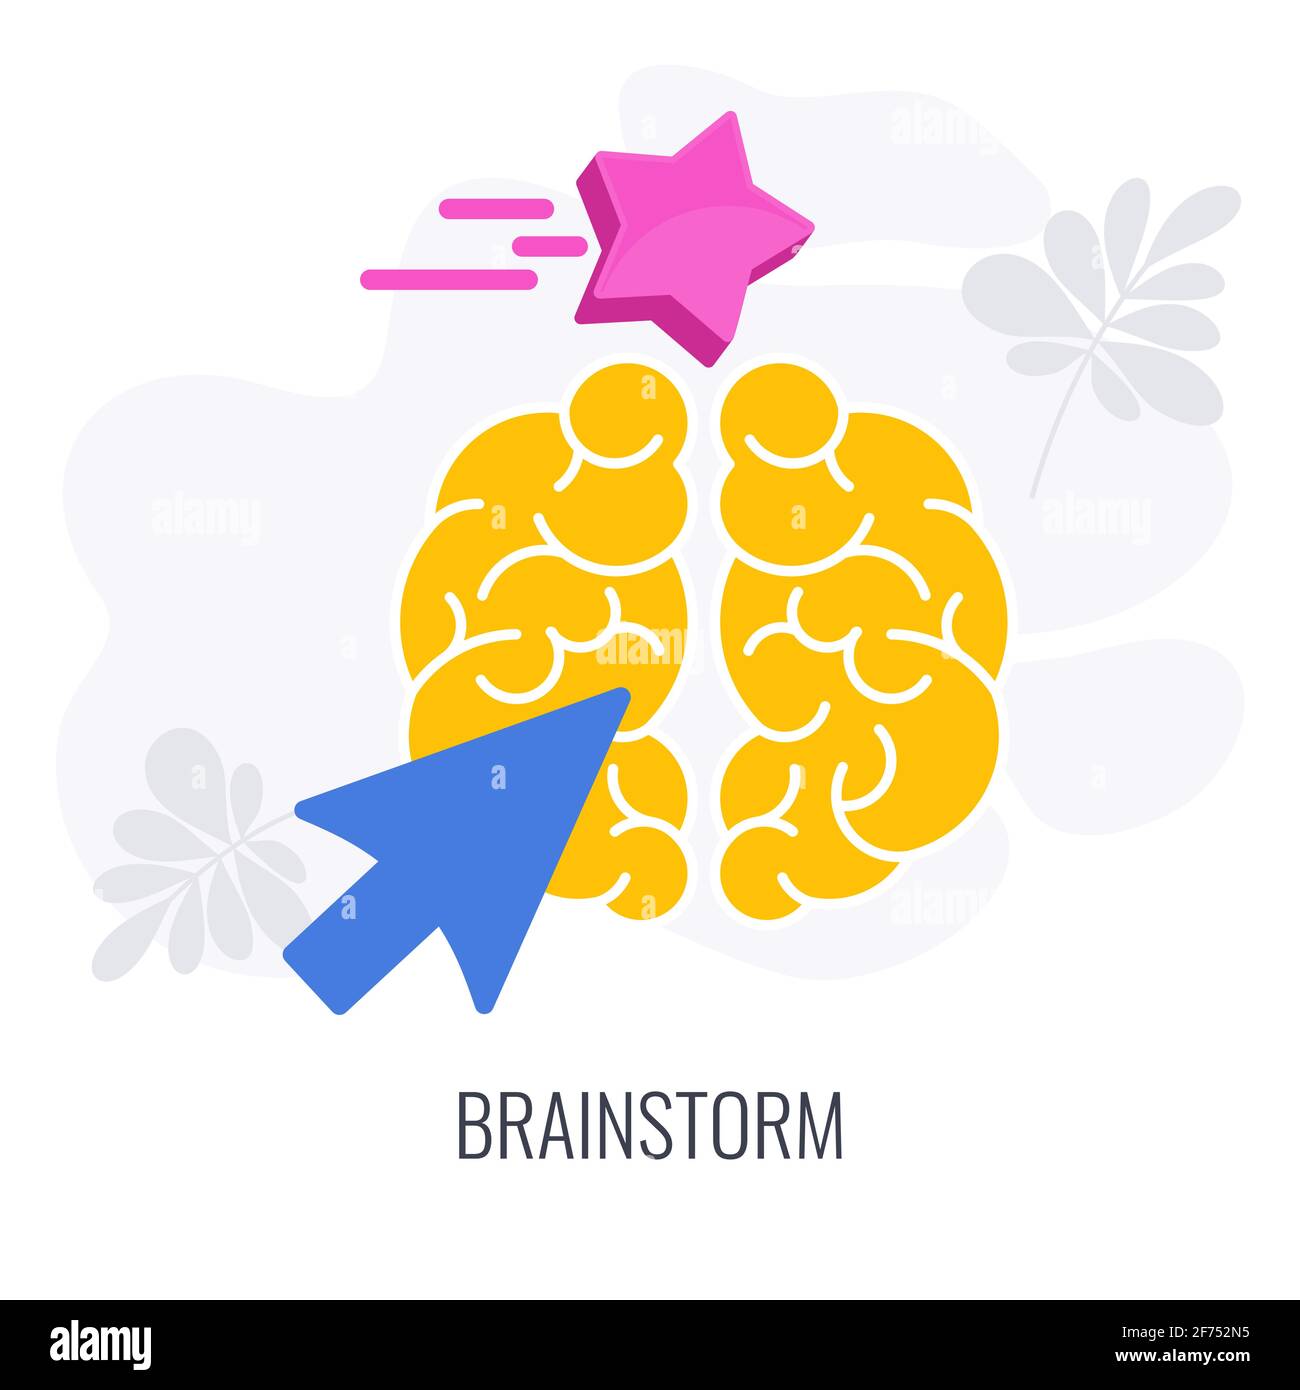 Icone di brainstorming. La freccia del cursore punta a un'icona gialla del cervello. Illustrazione Vettoriale